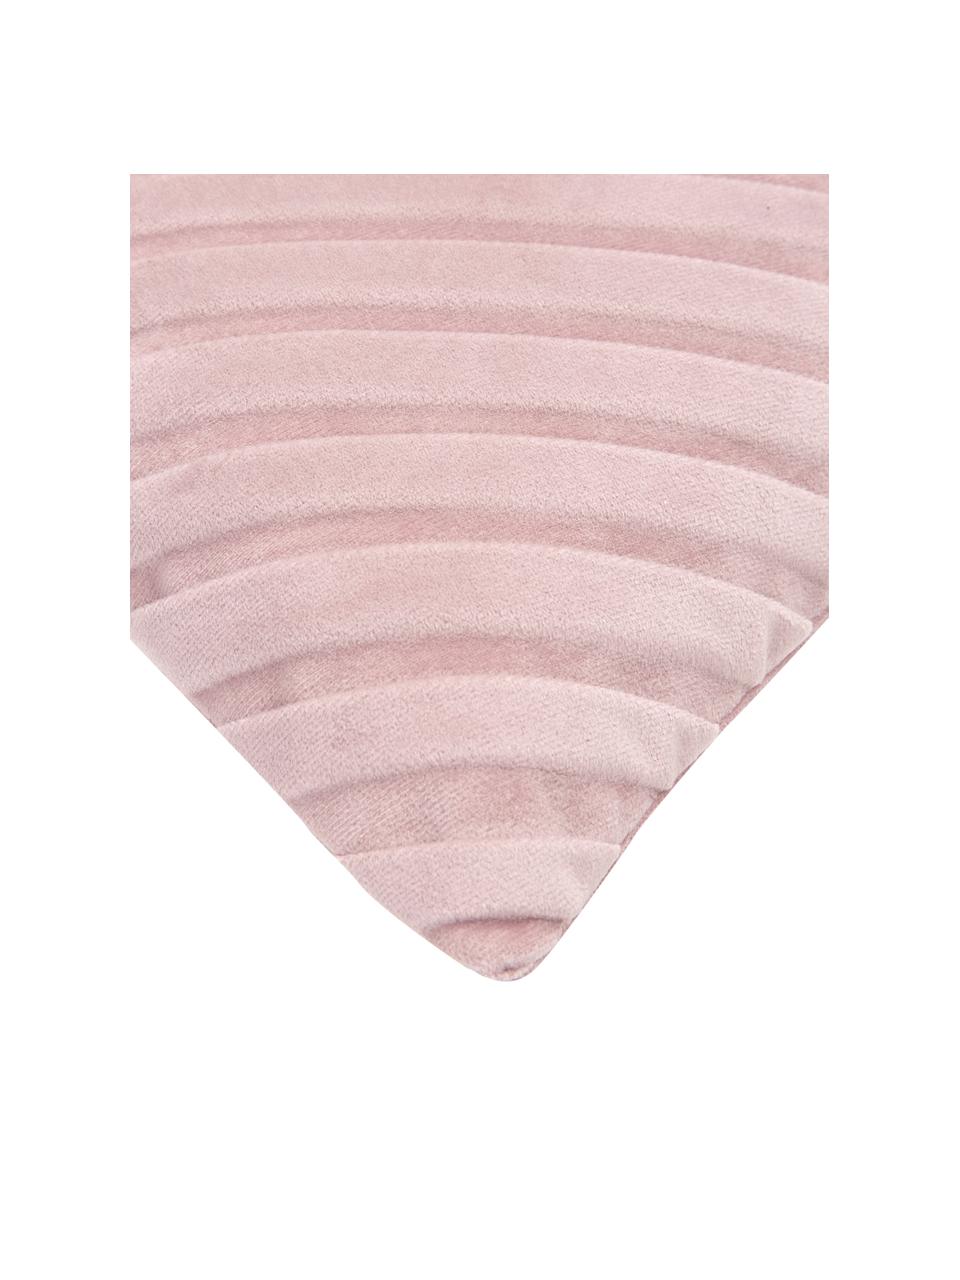 Federa arredo in velluto strutturato rosa Lucie, 100% velluto (poliestere), Rosa, Larg. 30 x Lung. 50 cm